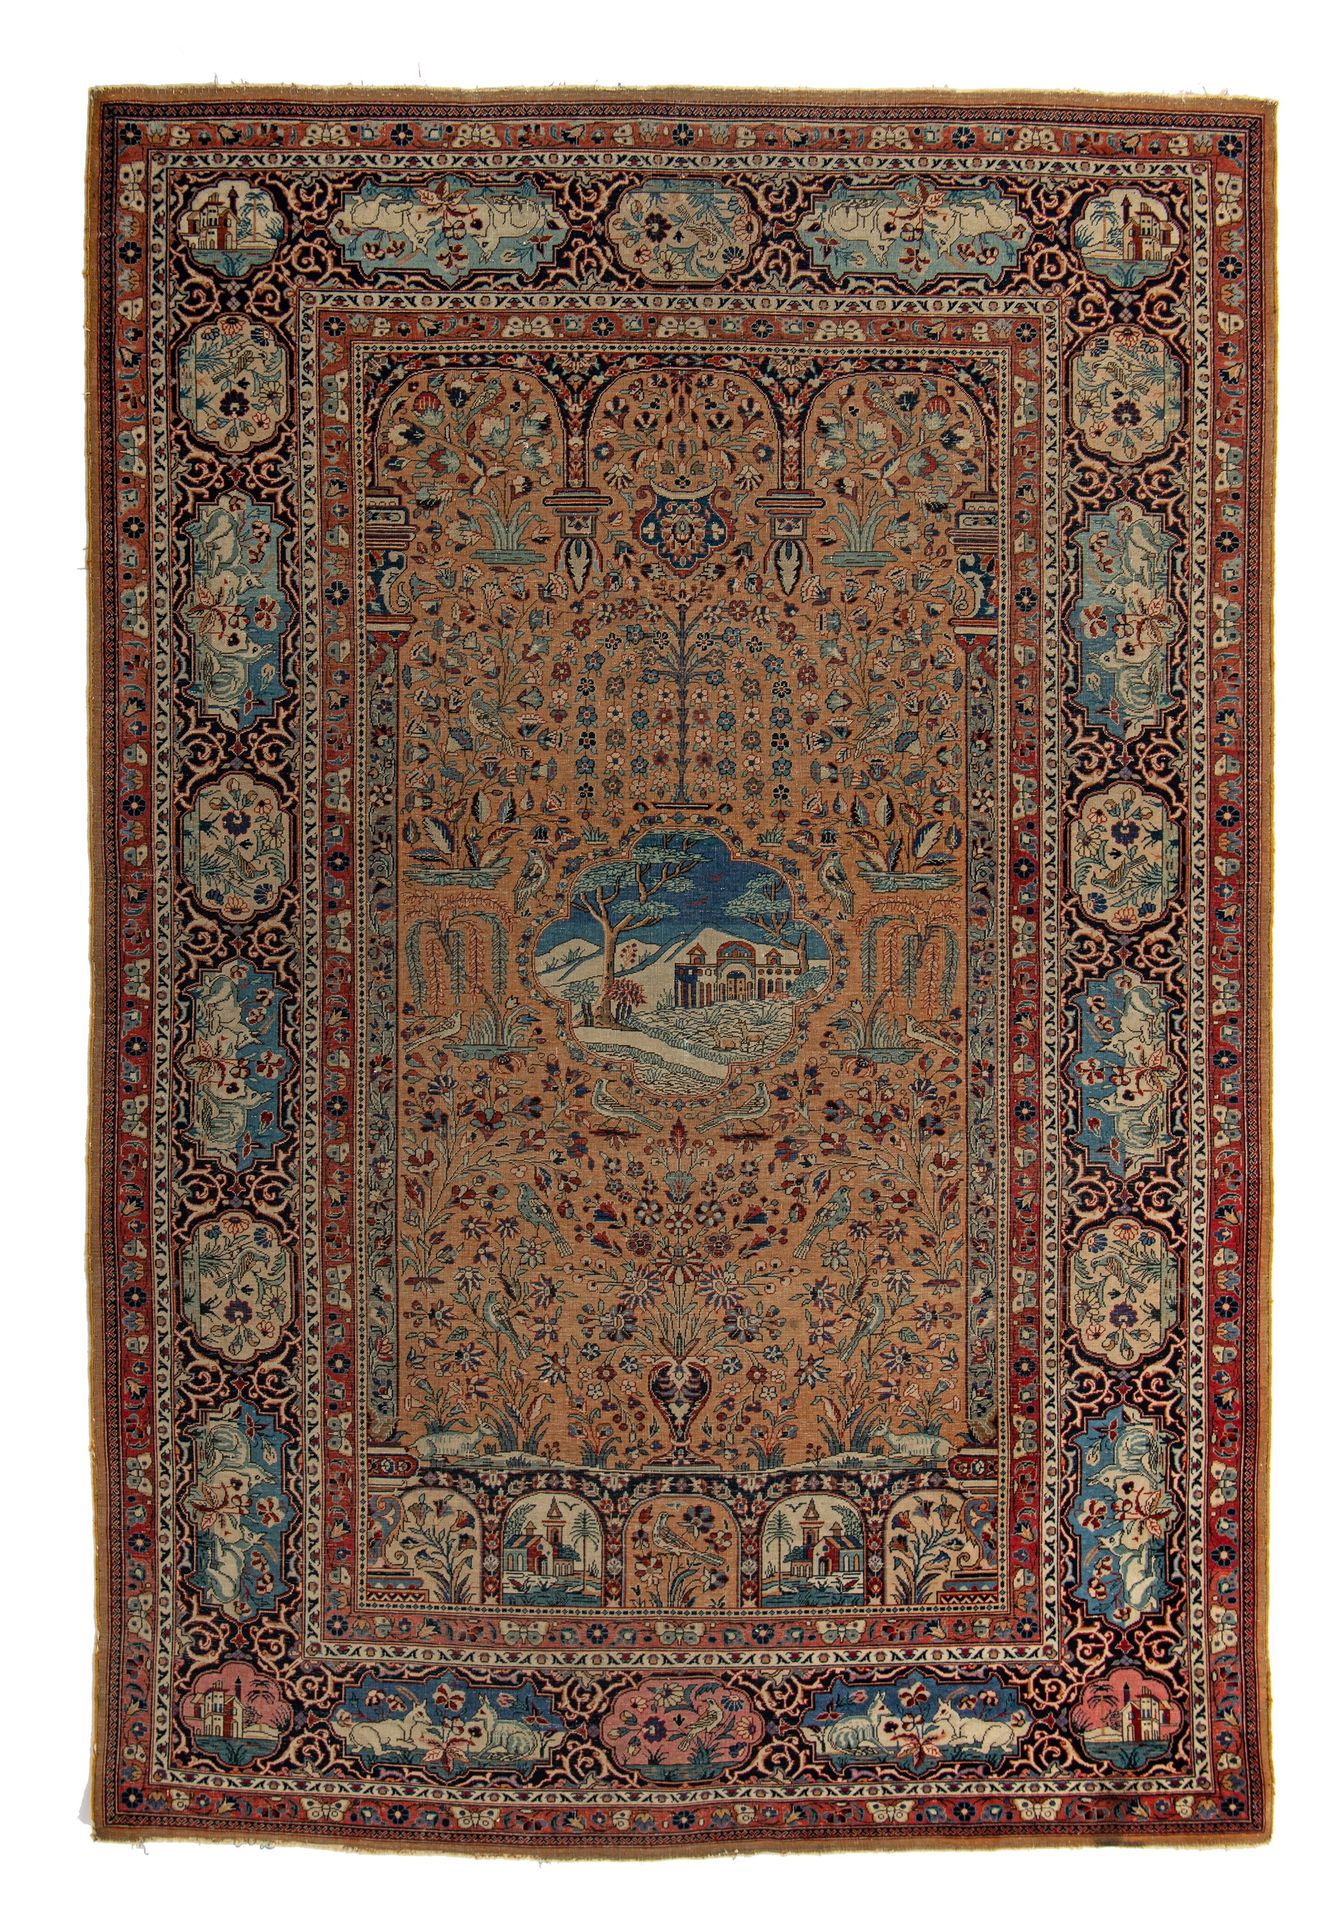 A fine antique Persian Kashan rug, 196 x 130 cm (+) Un beau tapis persan antique&hellip;